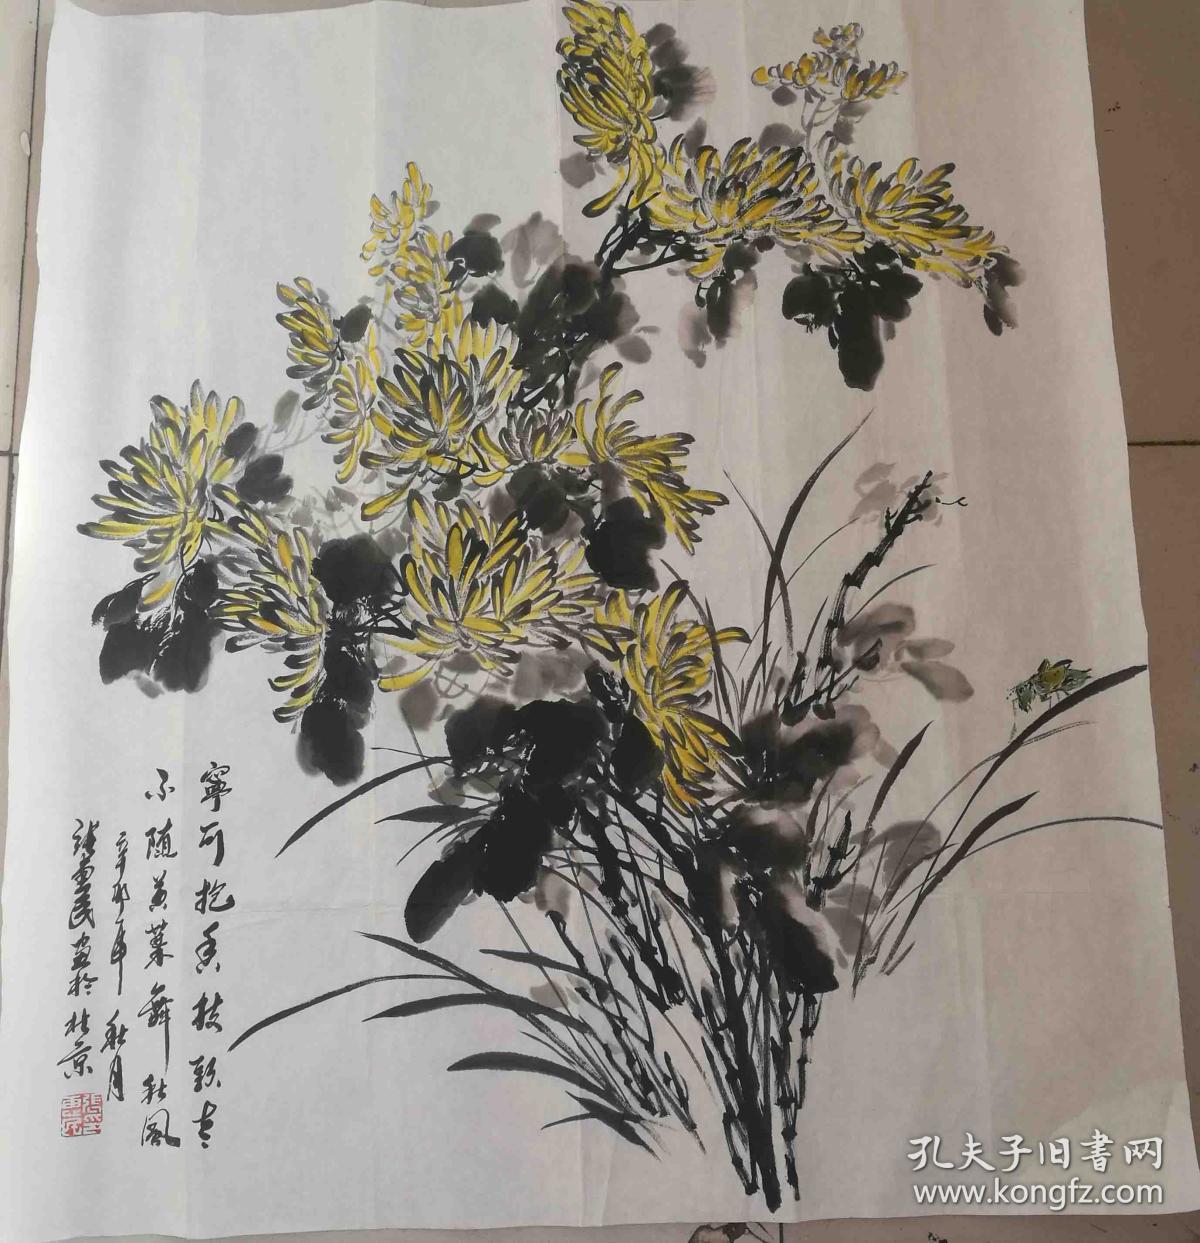 张惠民中国画院图片